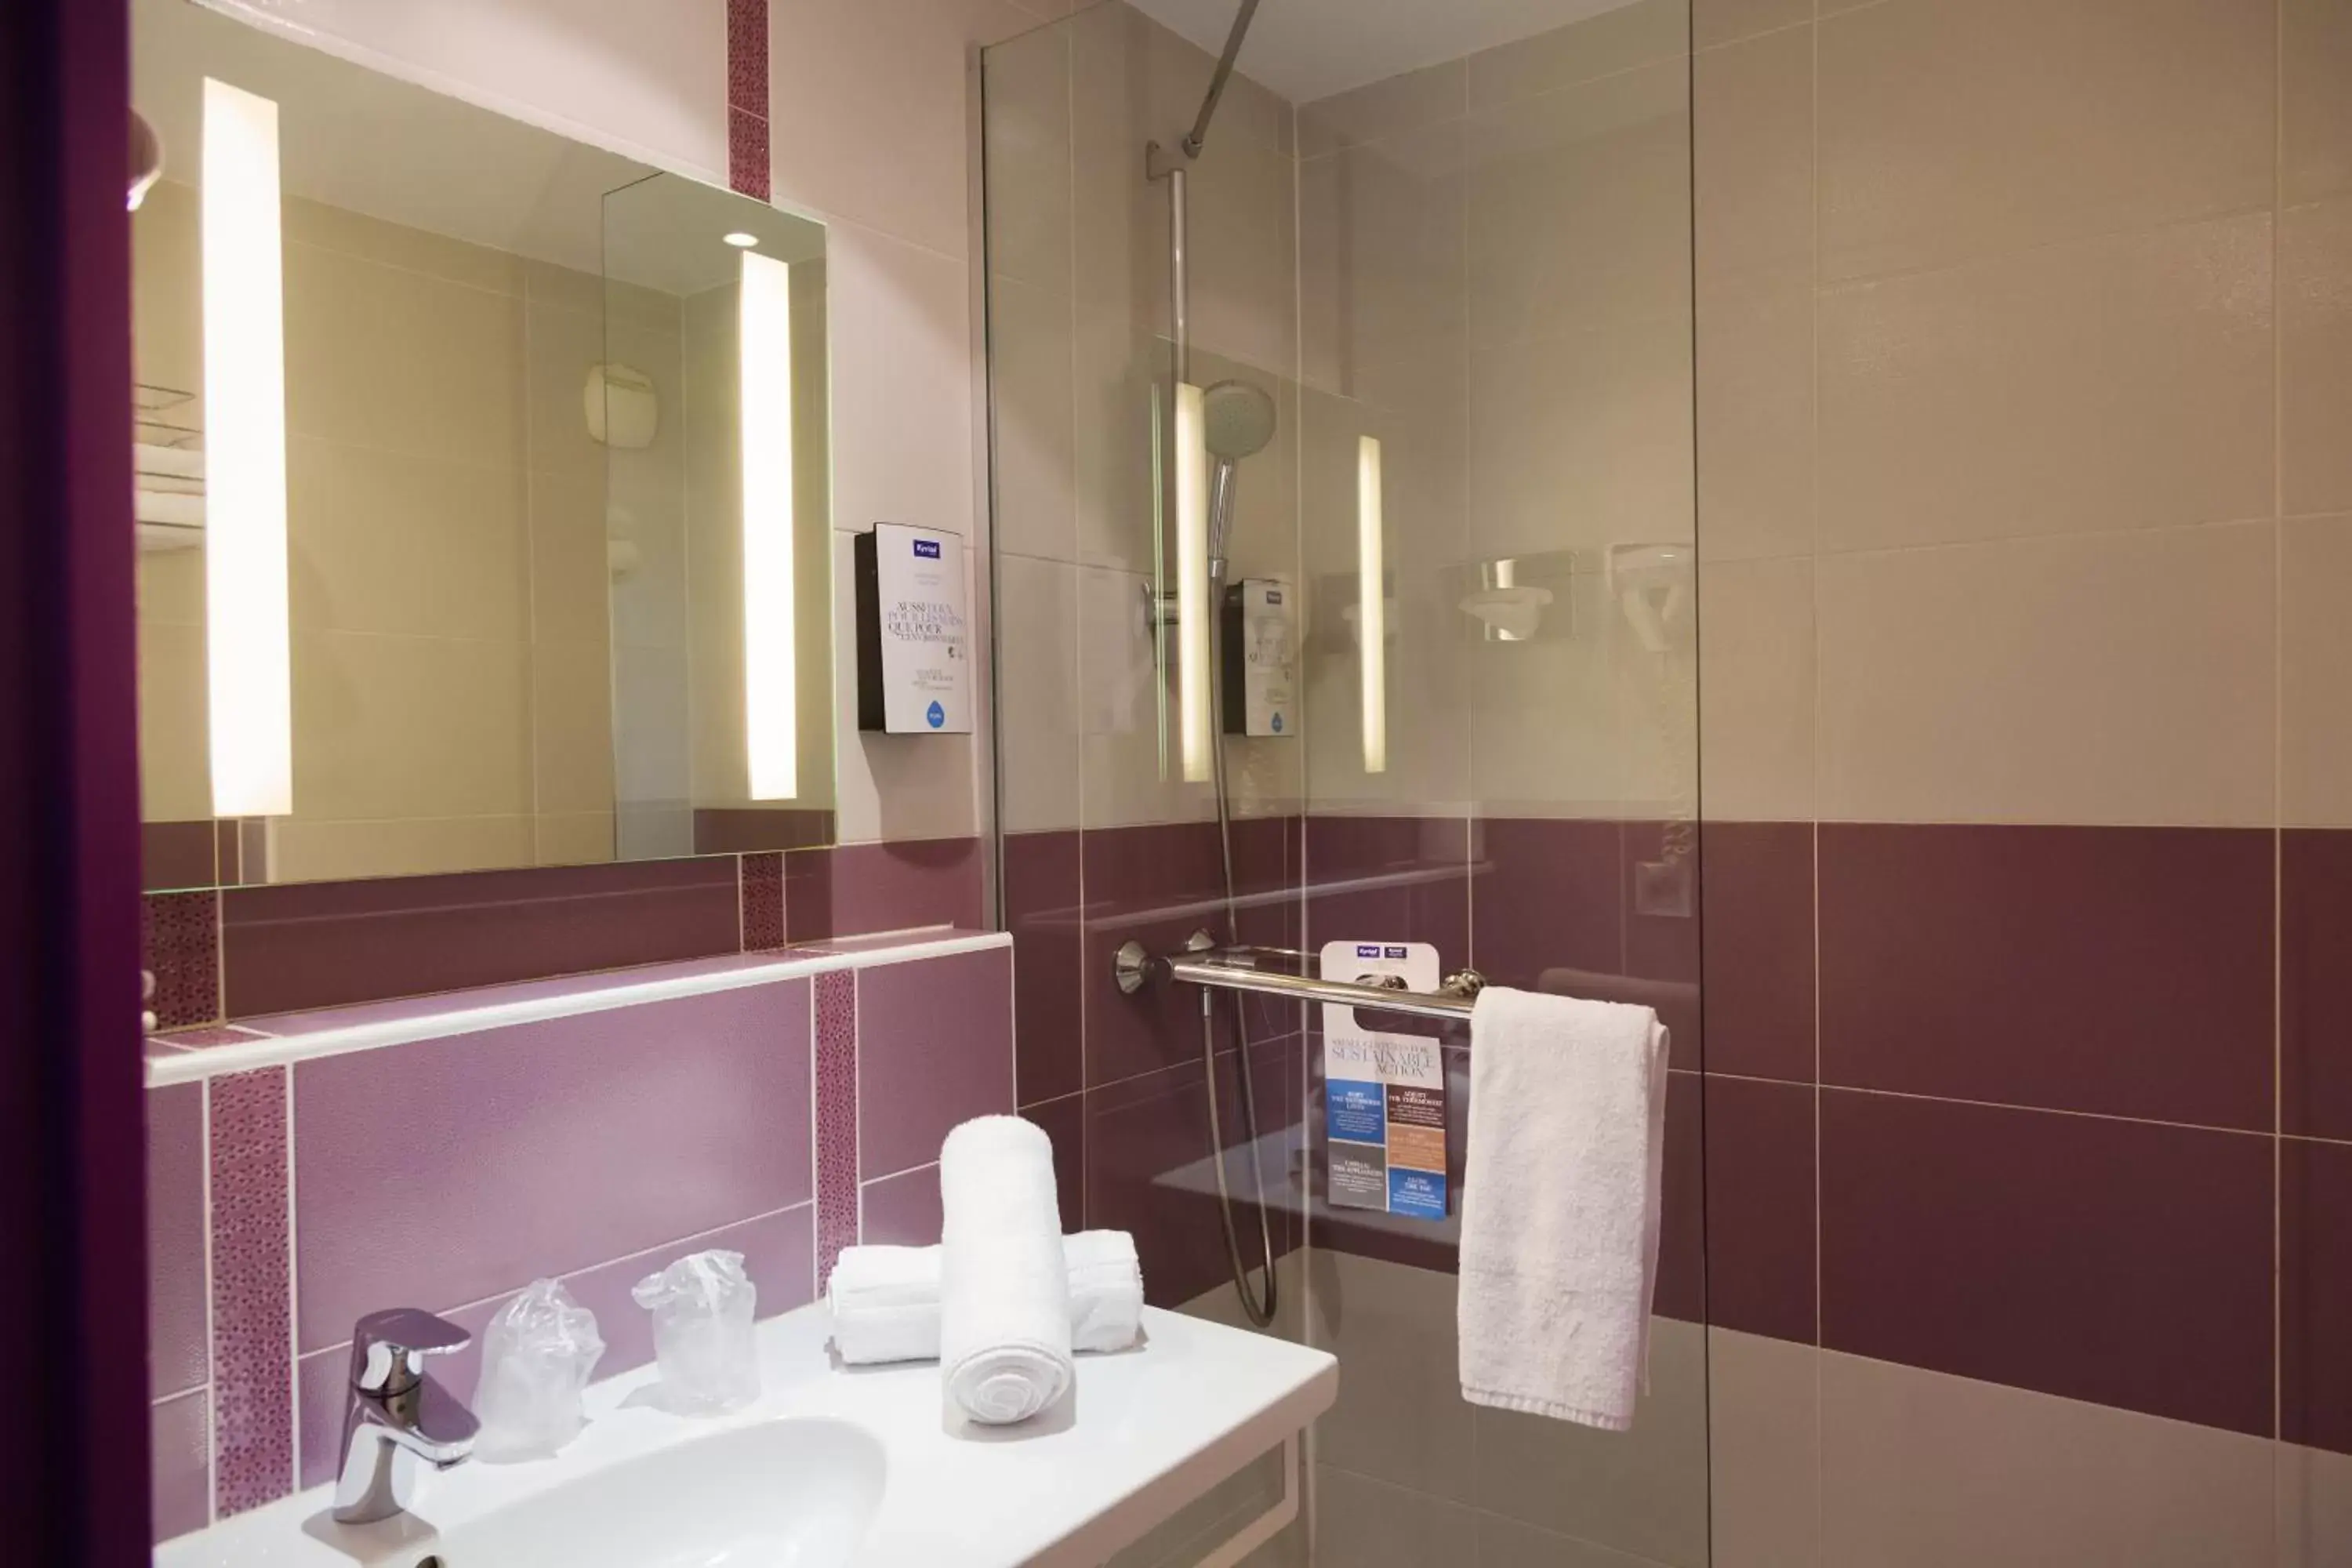 Bathroom in Kyriad Montpellier Sud - A709